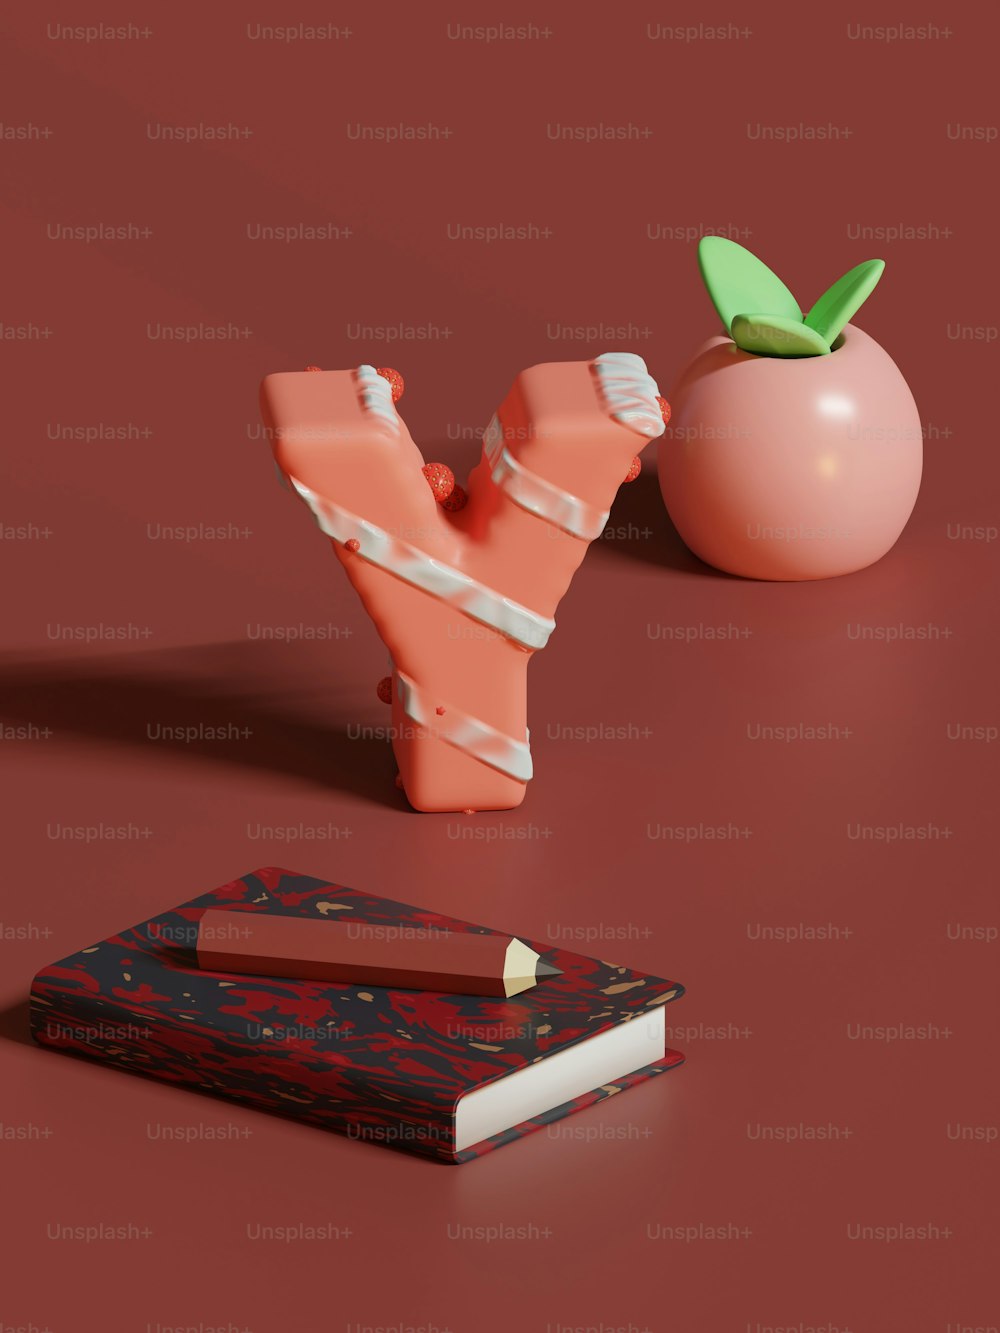 um pedaço de papel ao lado de uma maçã e um livro